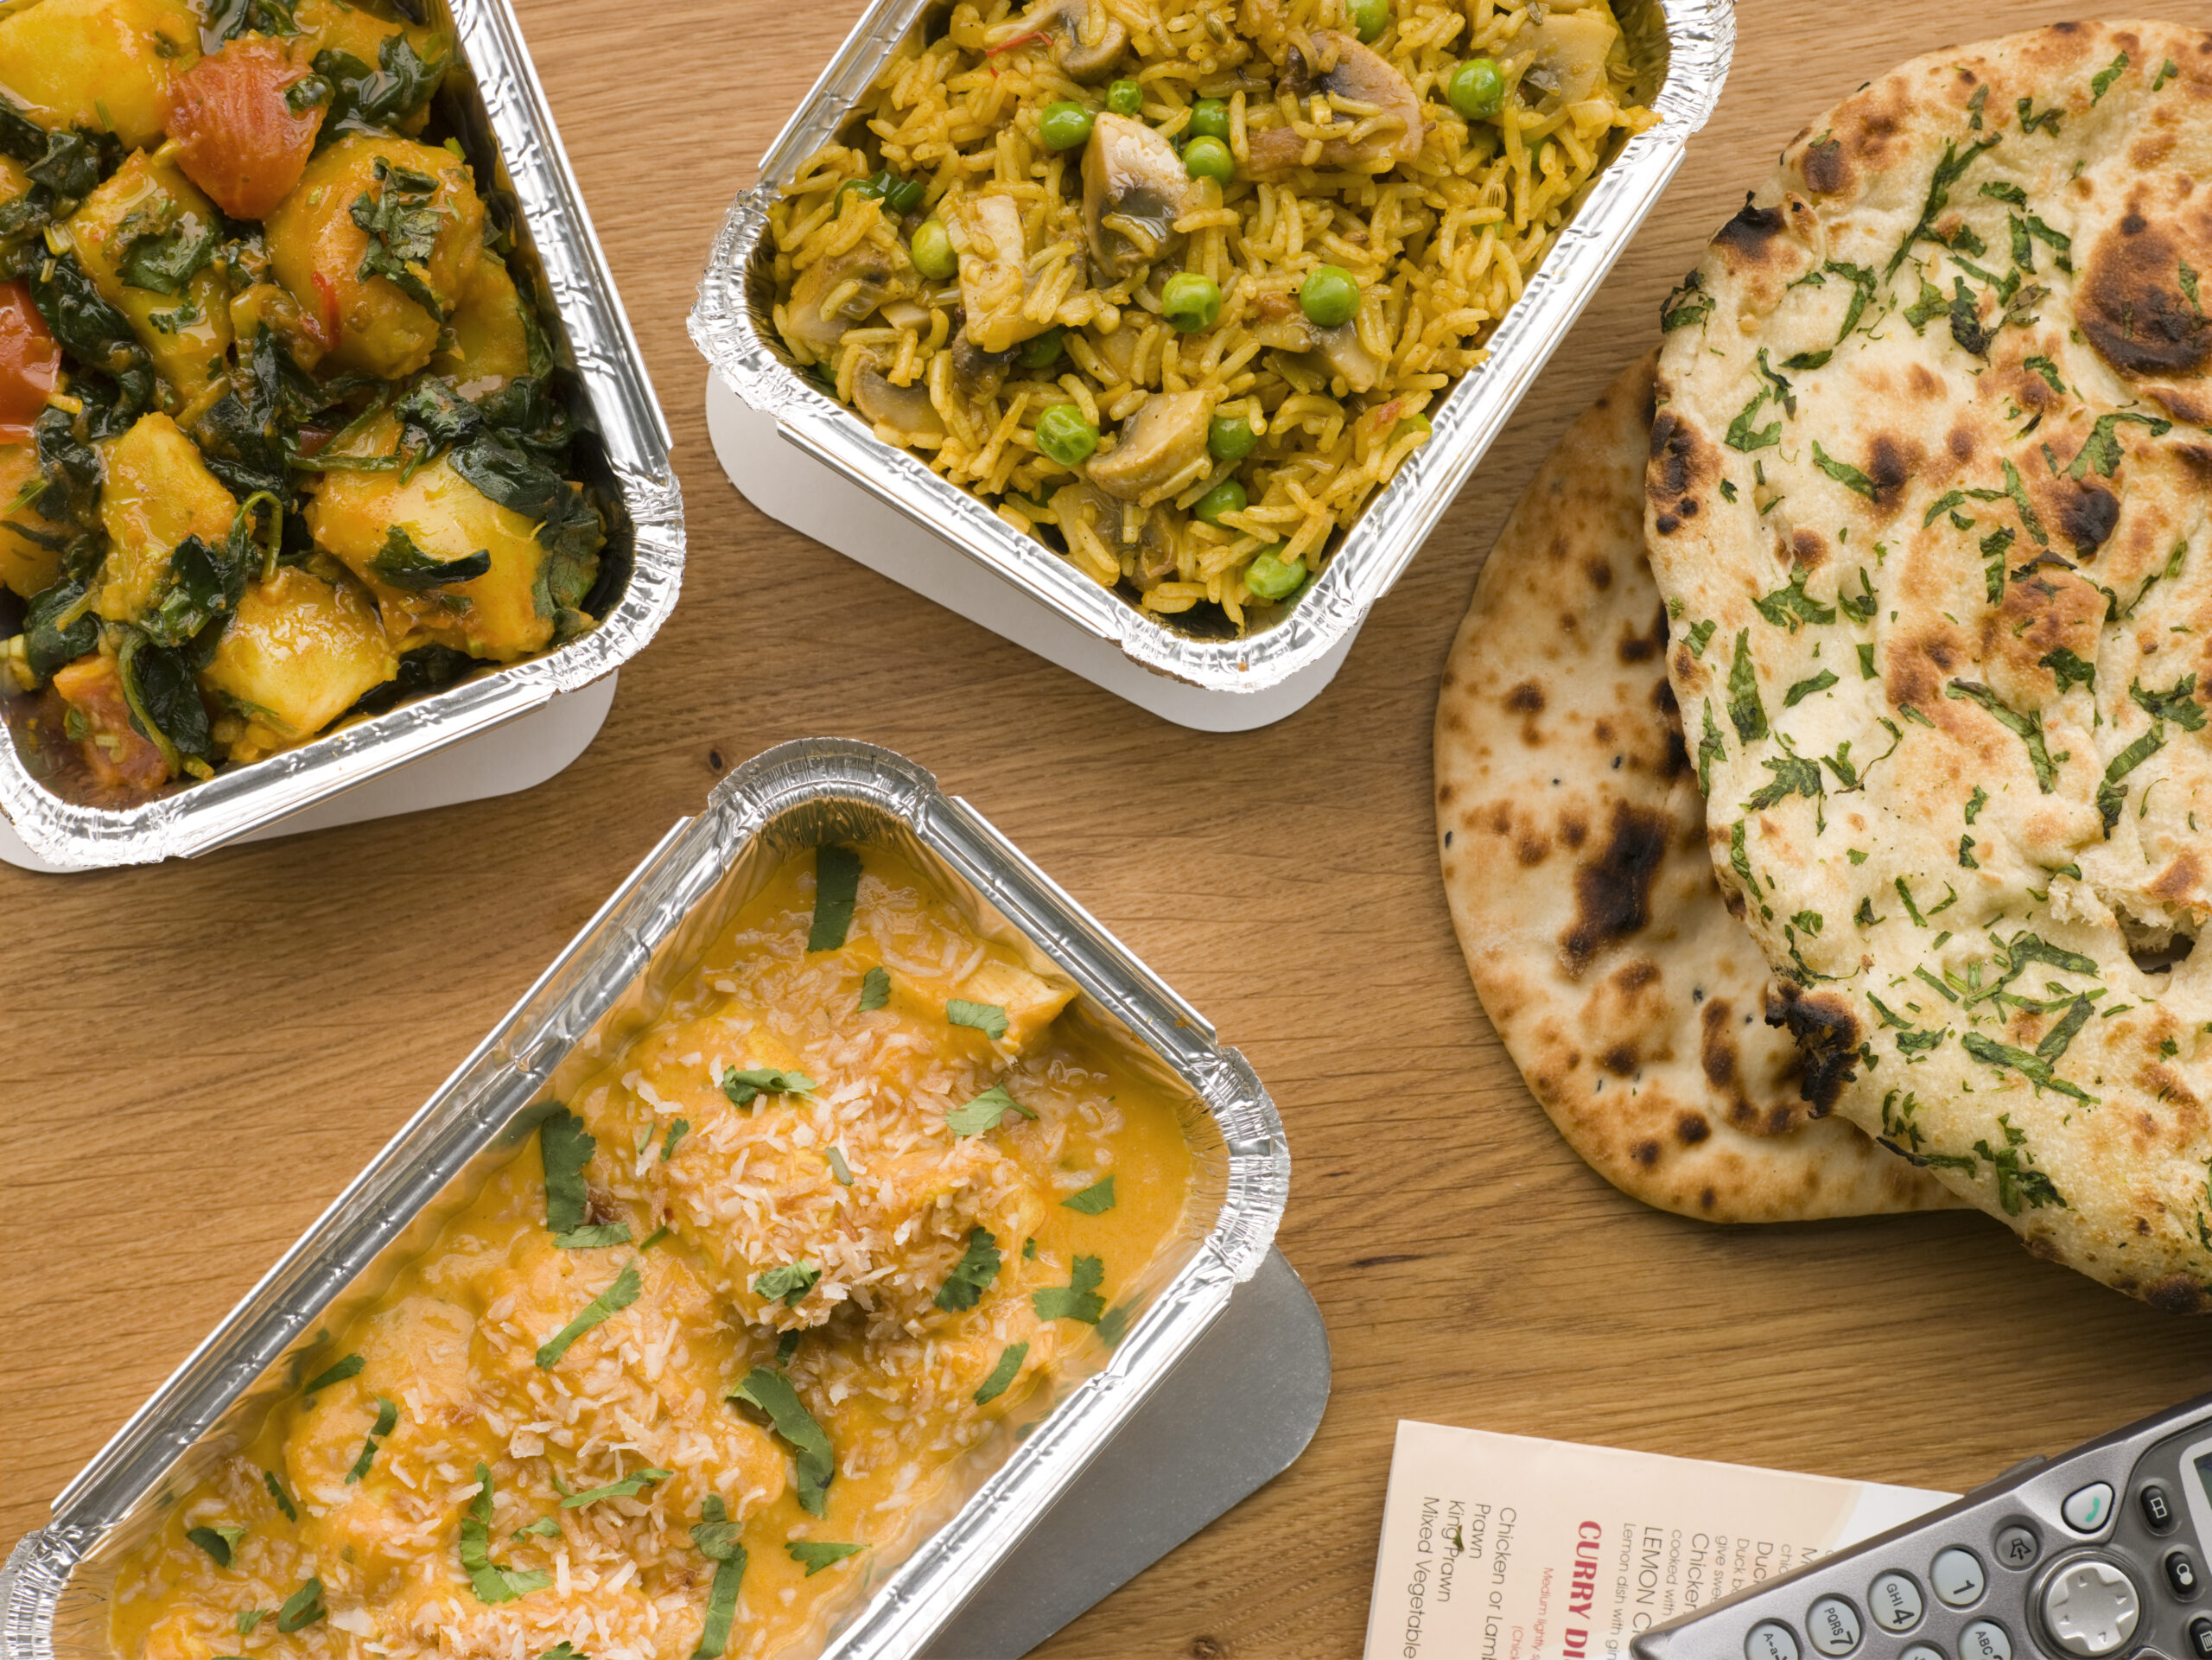 Chicken Korma, Sag Aloo, Mushroom Pilau And Naan Bread On Table